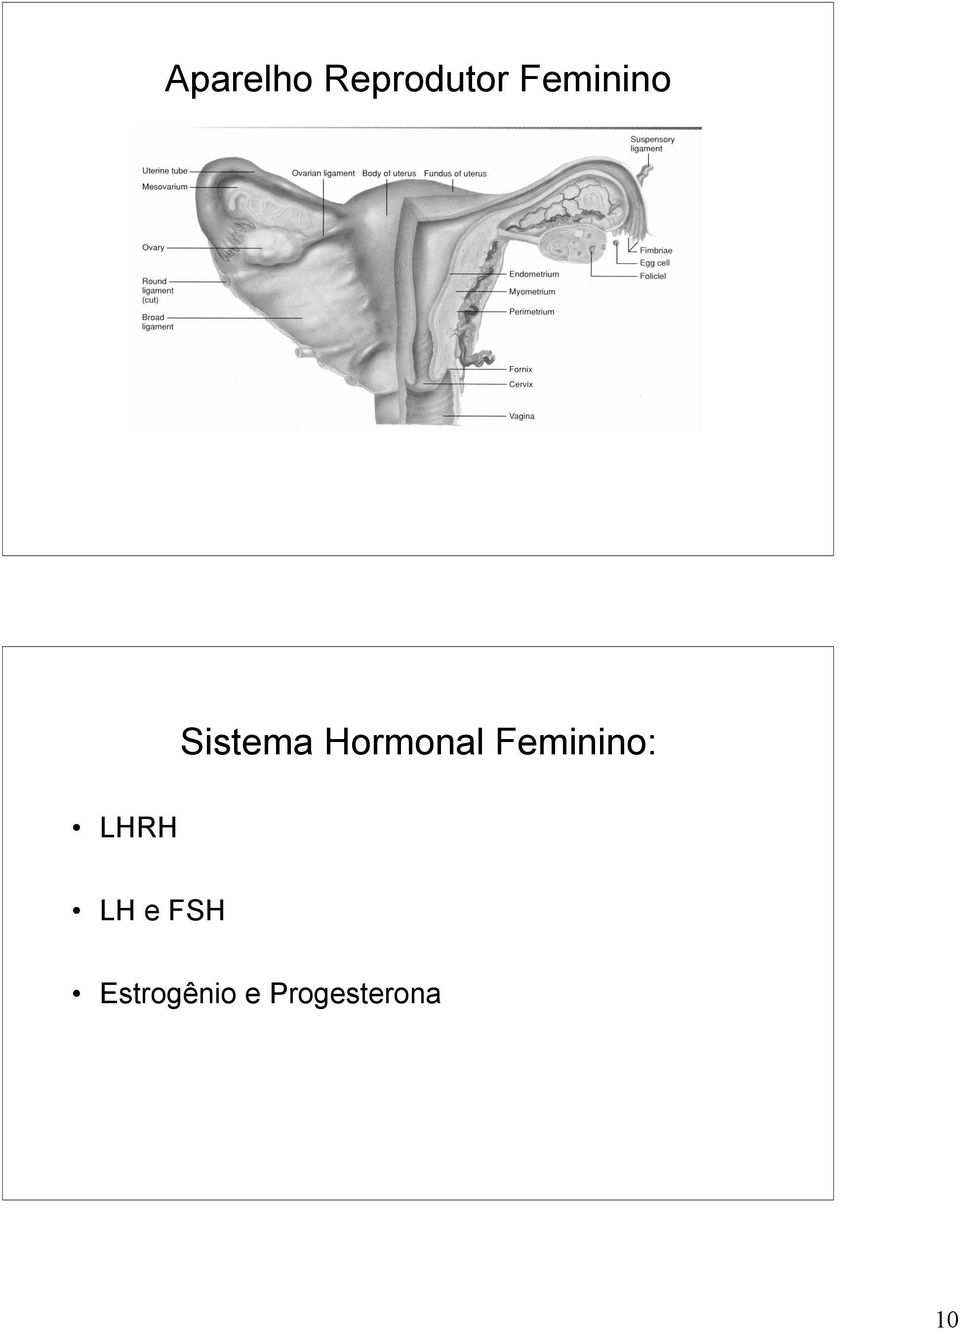 Hormonal Feminino: LHRH